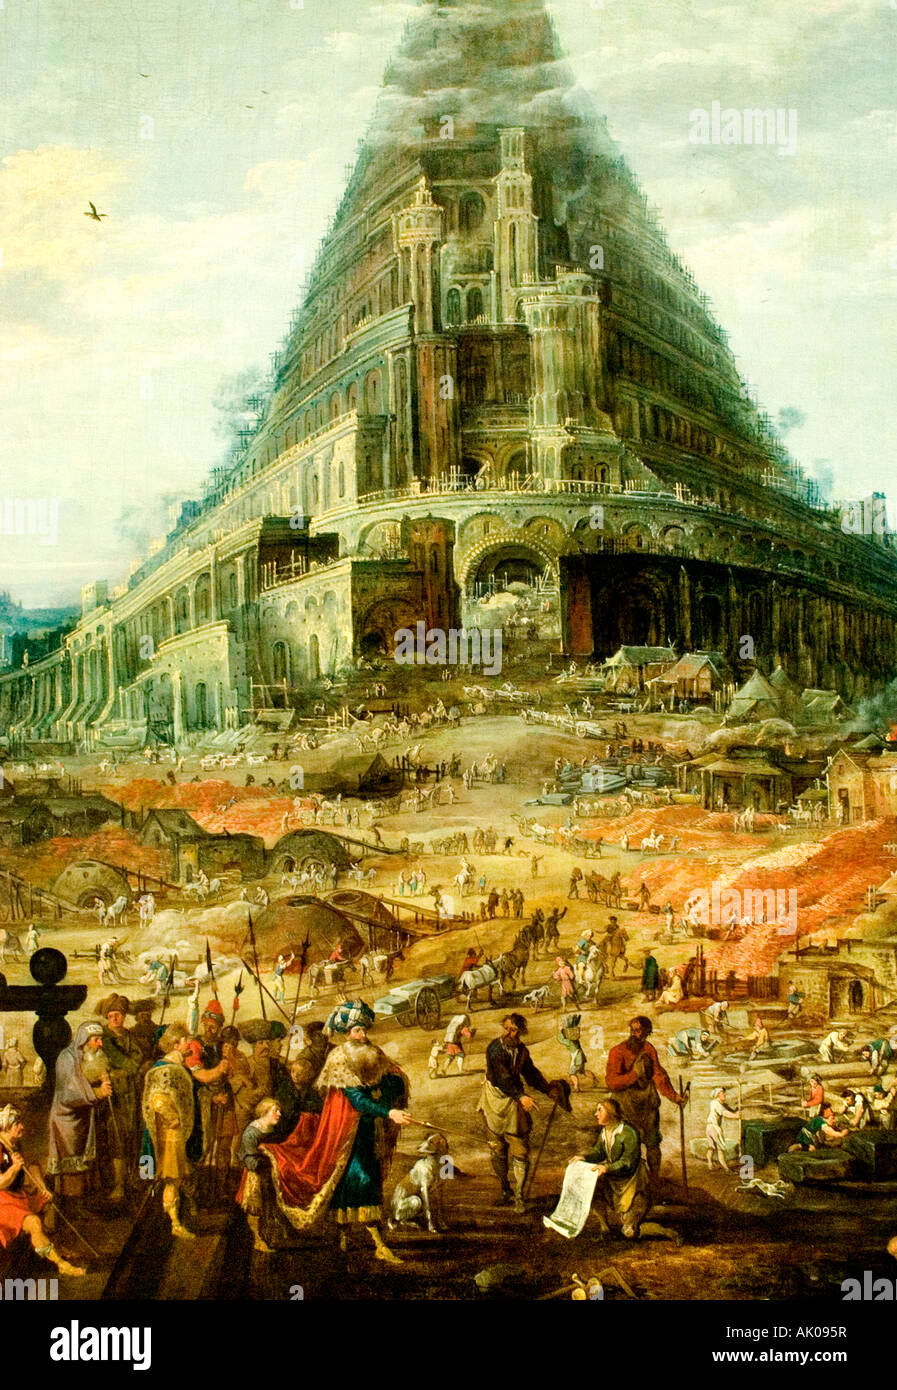 Der Turm von Babel Joos de Momper ll 1564-1635 (Frans Franken ll) Flämisch Belgien Belgien Stockfoto